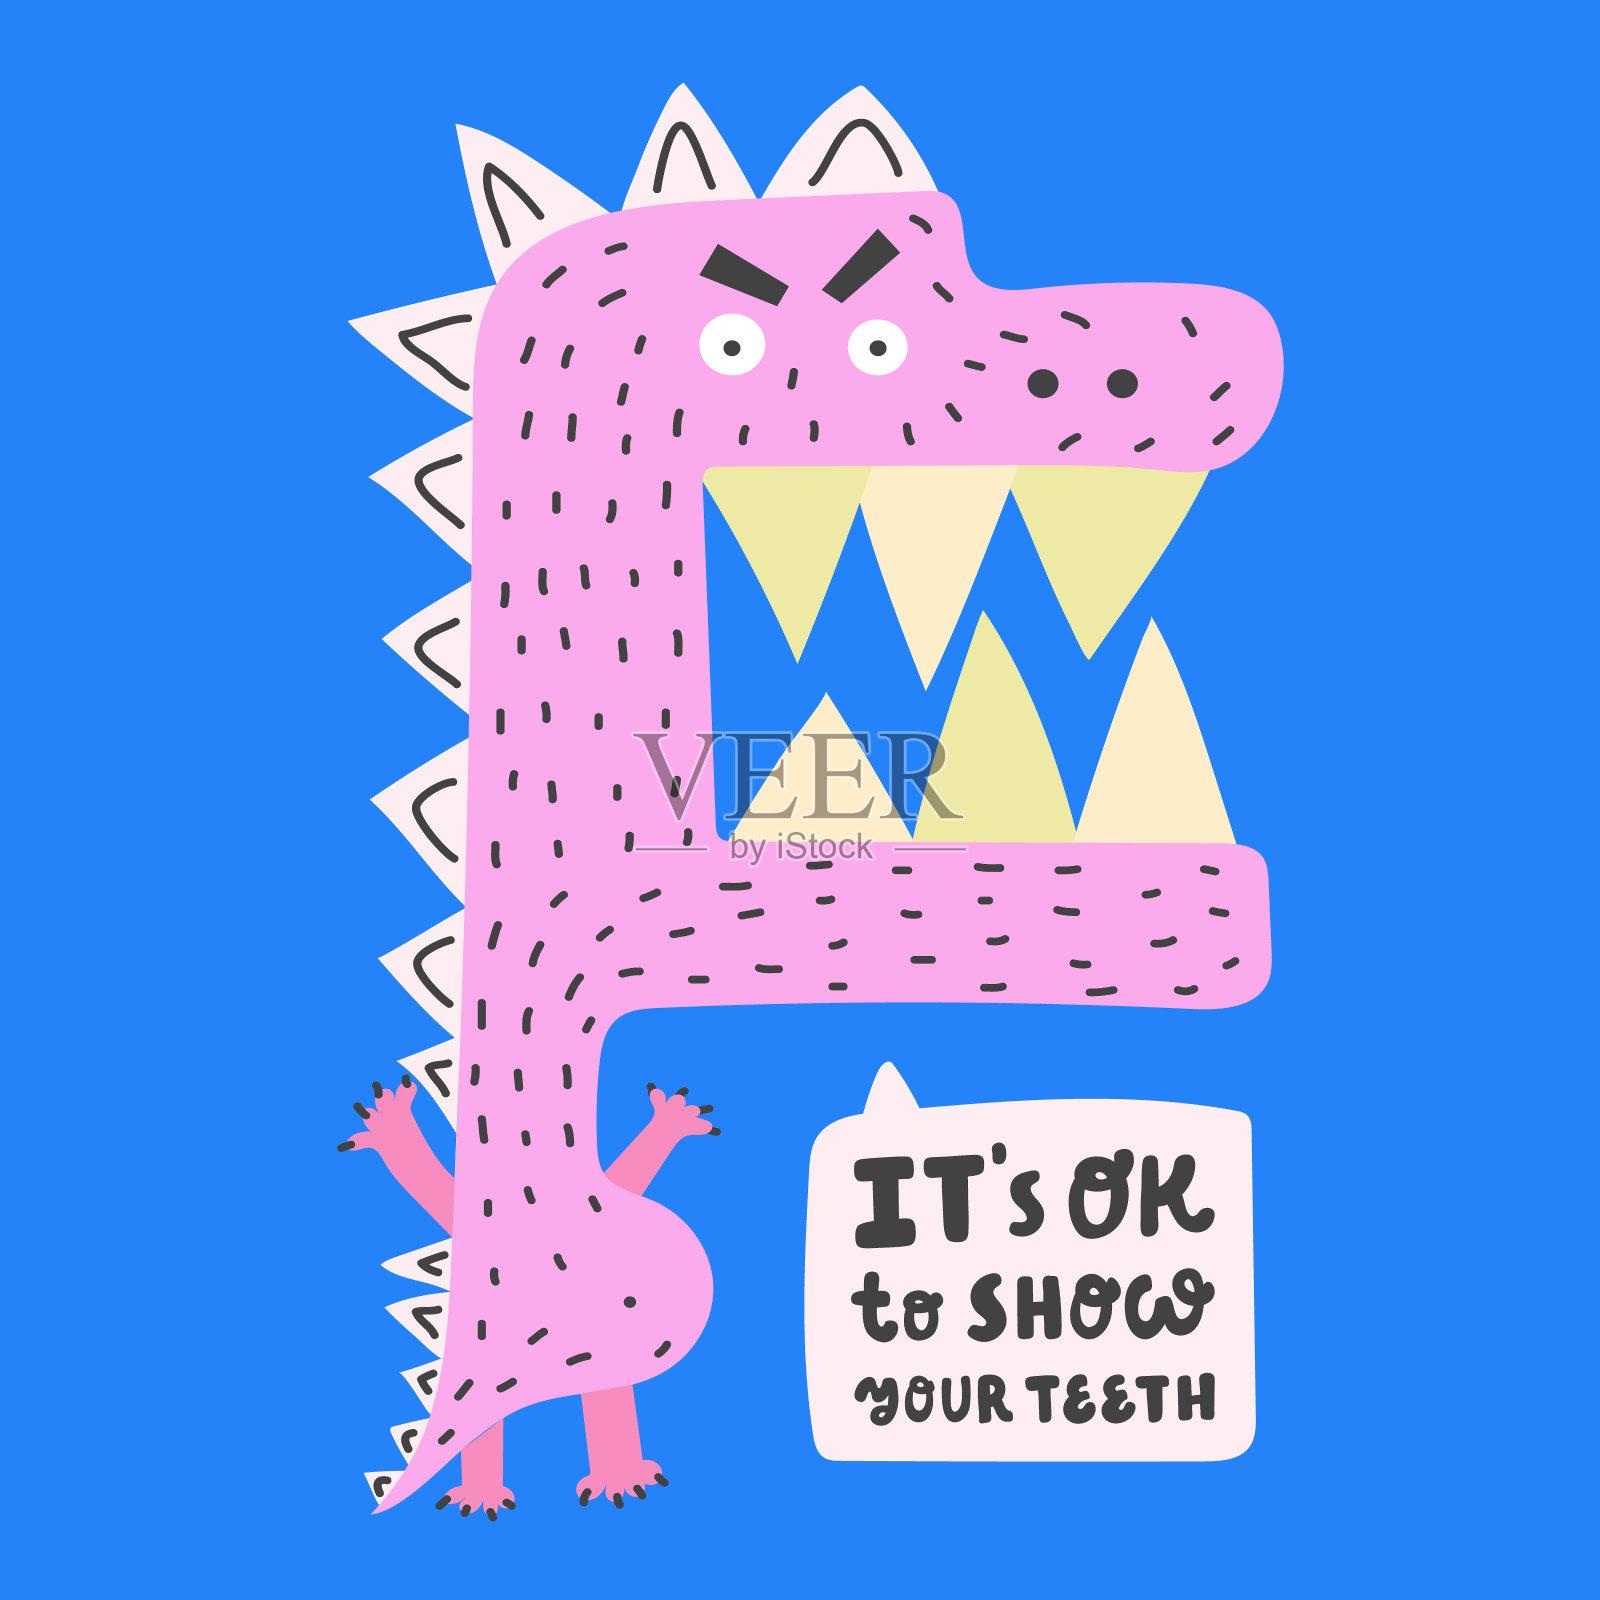 露出牙齿是可以的。手绘的粉红色恐龙在蓝色的背景。插画图片素材